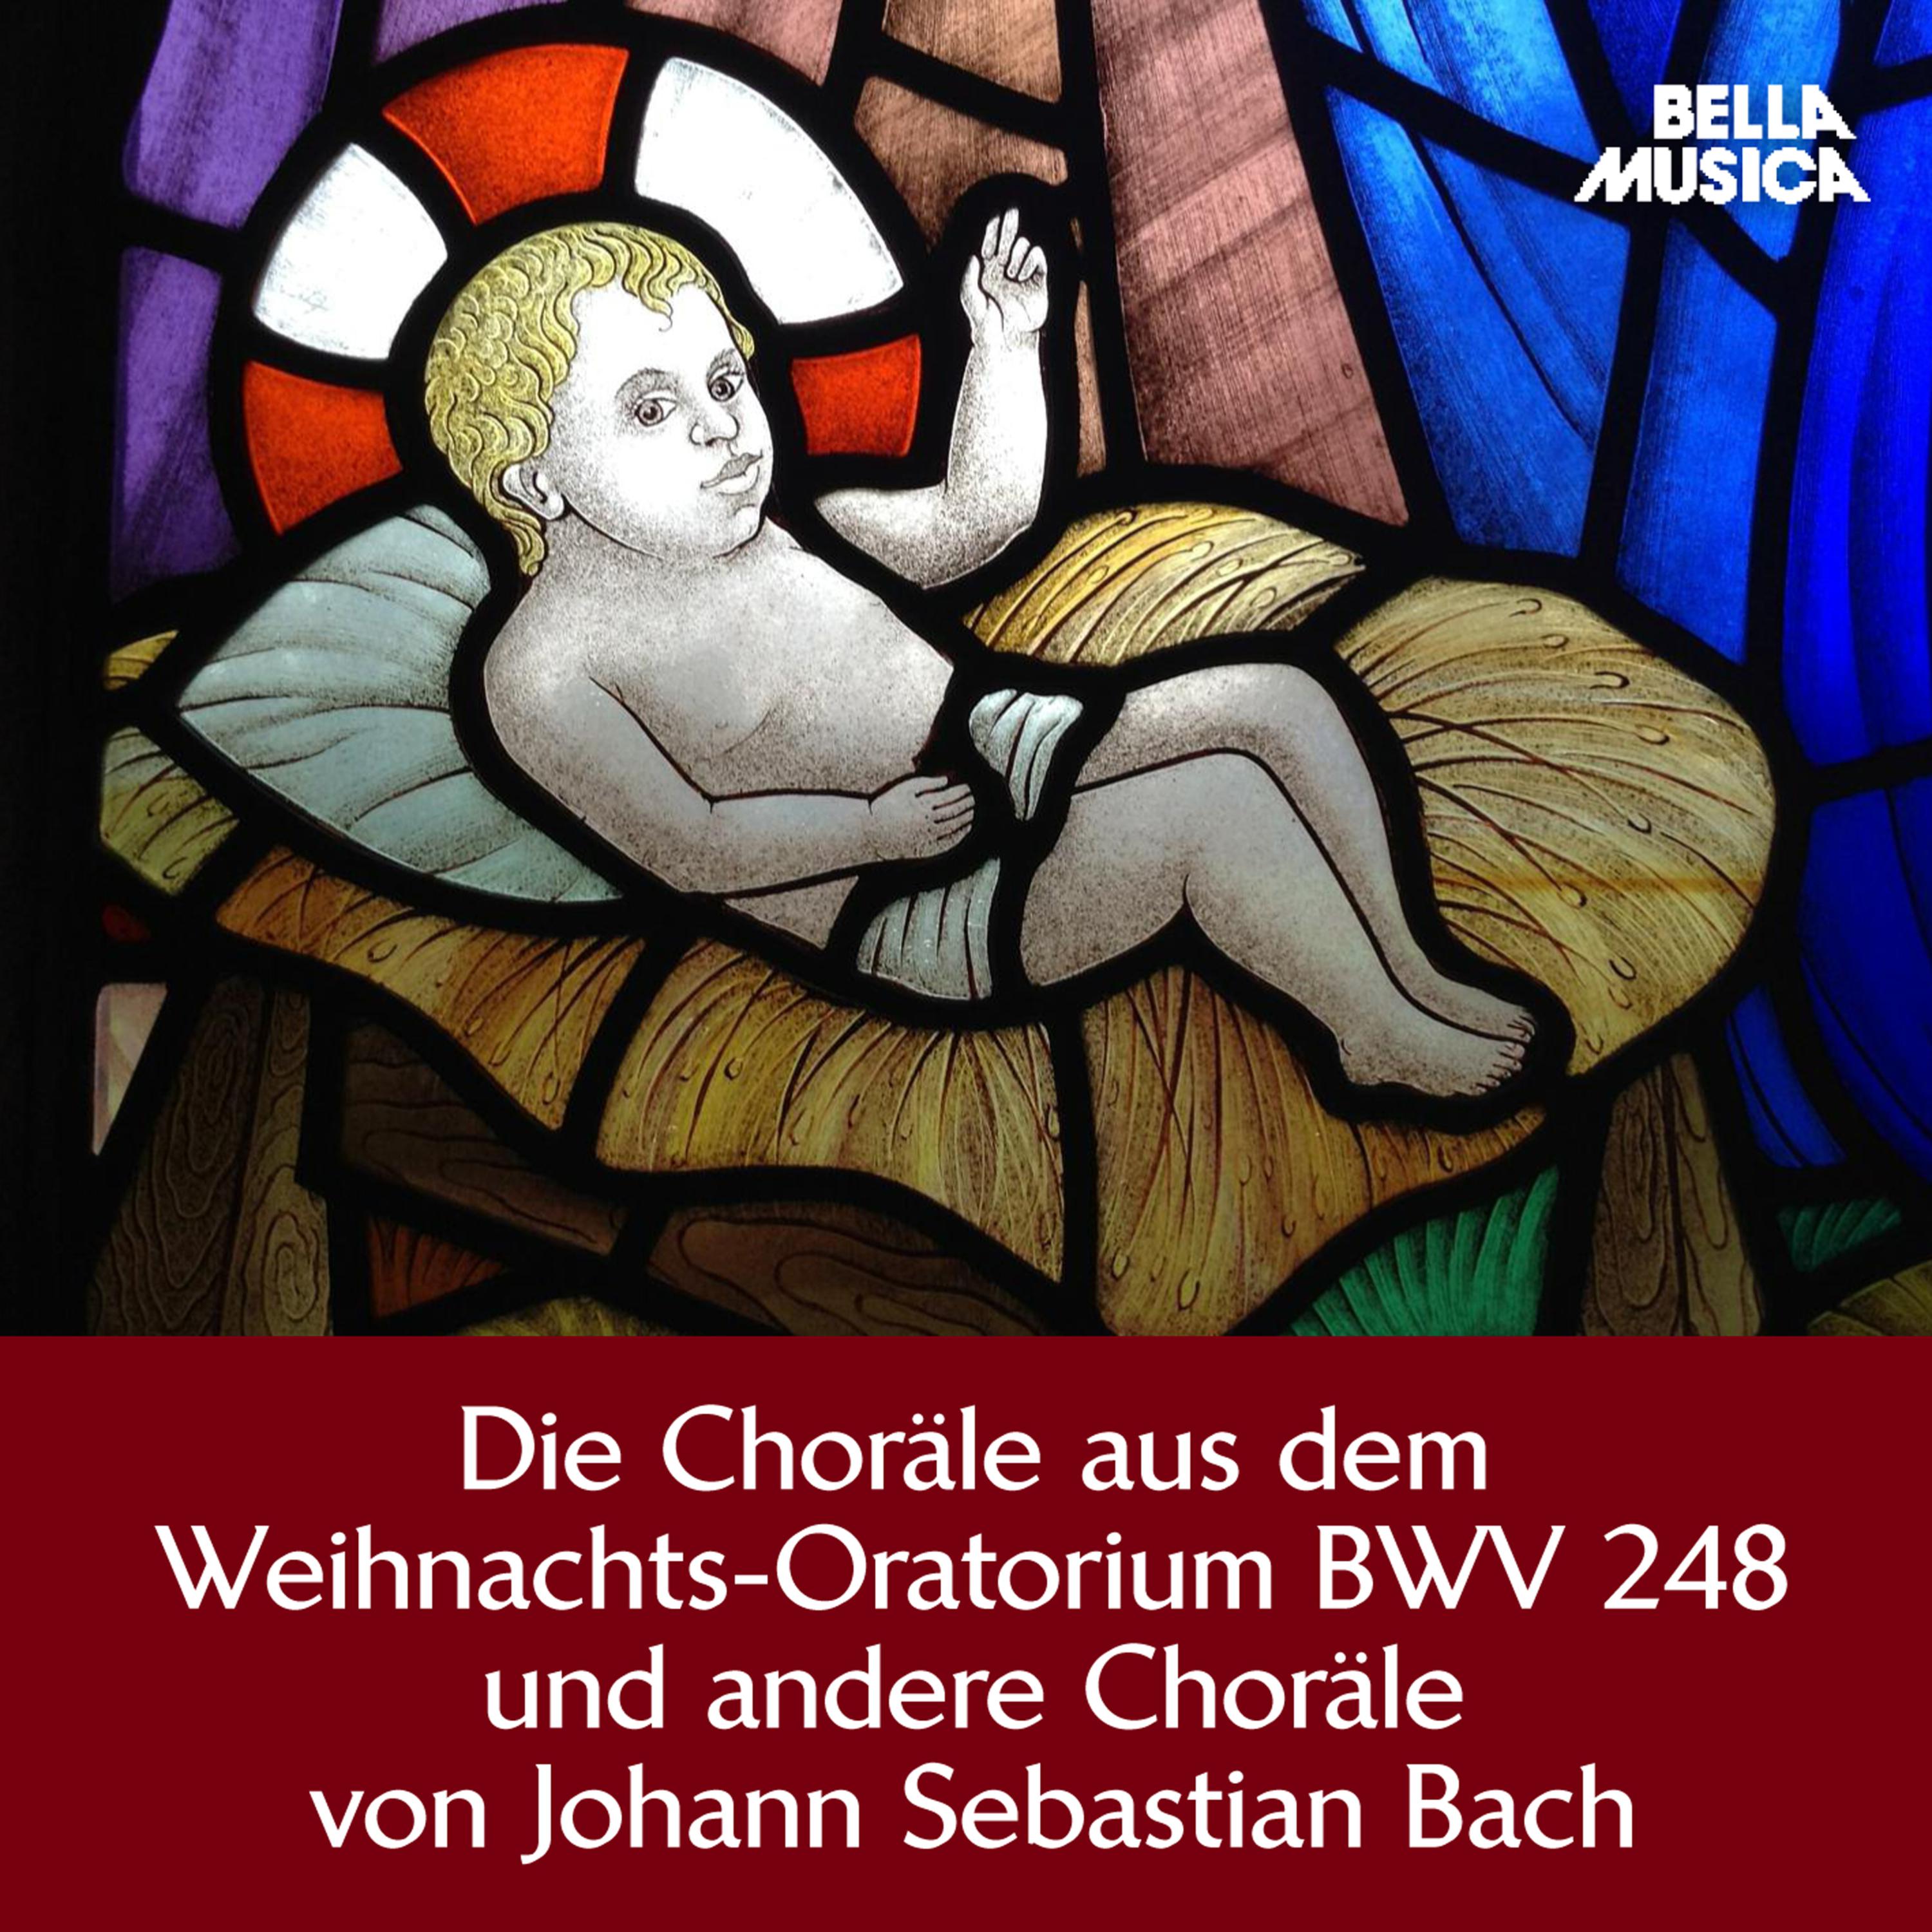 WeihnachtsOratorium, BWV 248, Teil 3, Am 3. Heiligen WeynachtsFeyertage: Herrscher des Himmels. erh re das Lallen